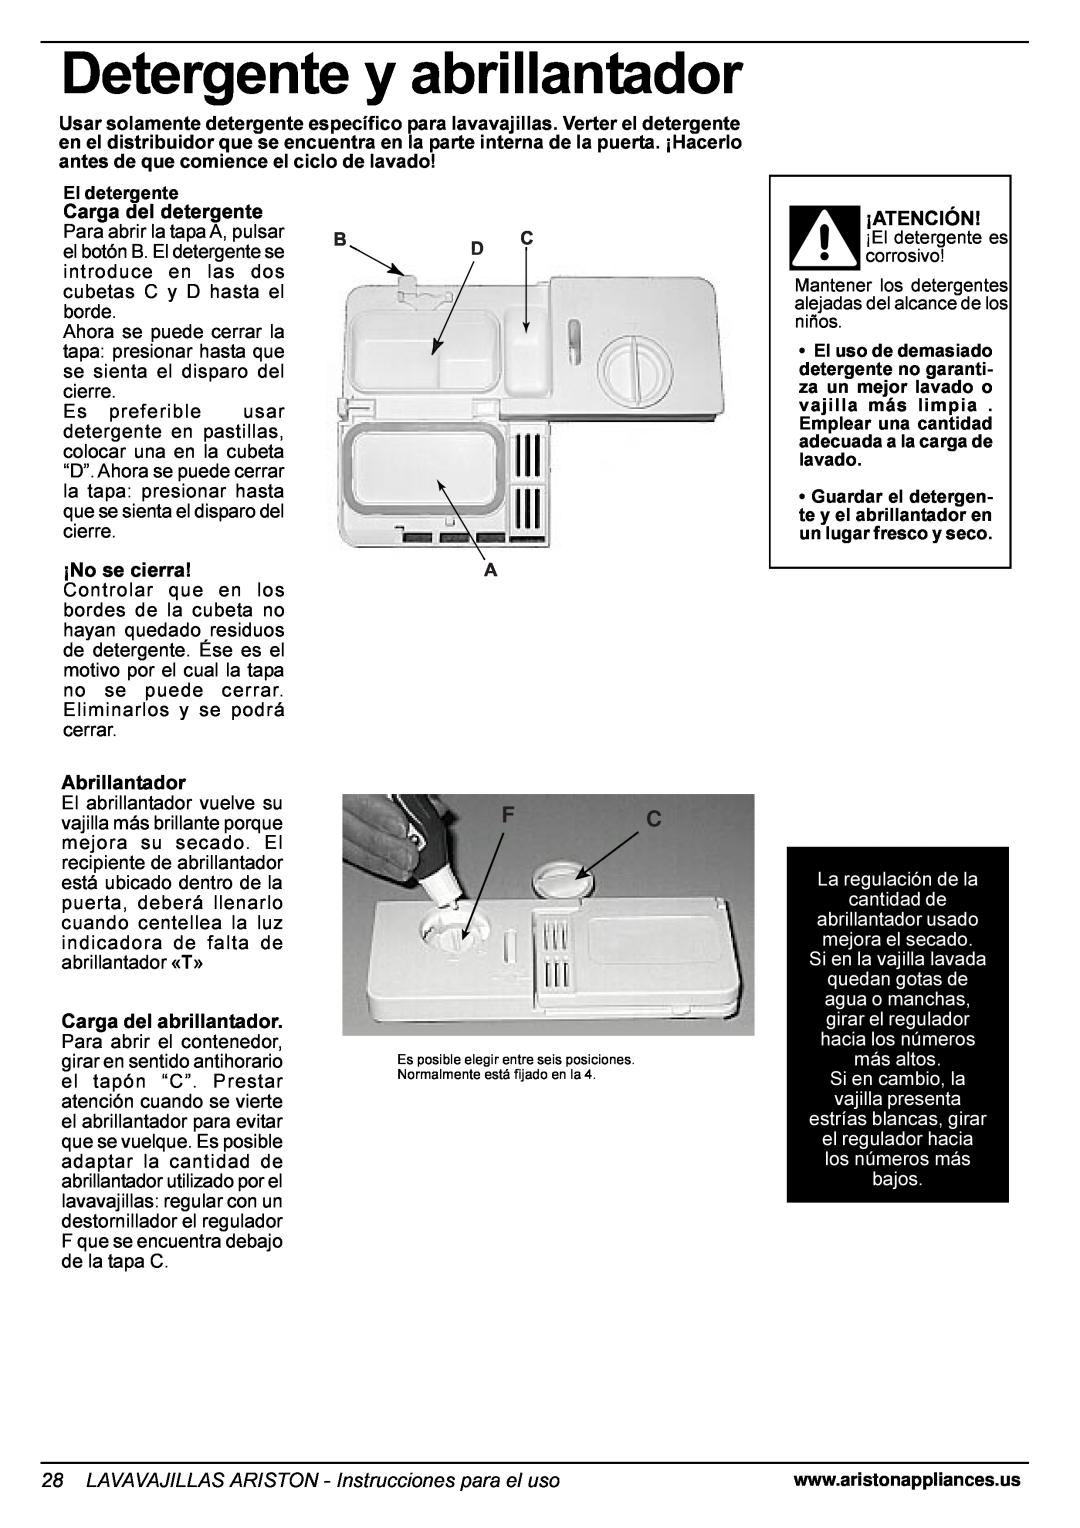 Ariston LI 700 I Detergente y abrillantador, LAVAVAJILLAS ARISTON - Instrucciones para el uso, Si en la vajilla lavada 